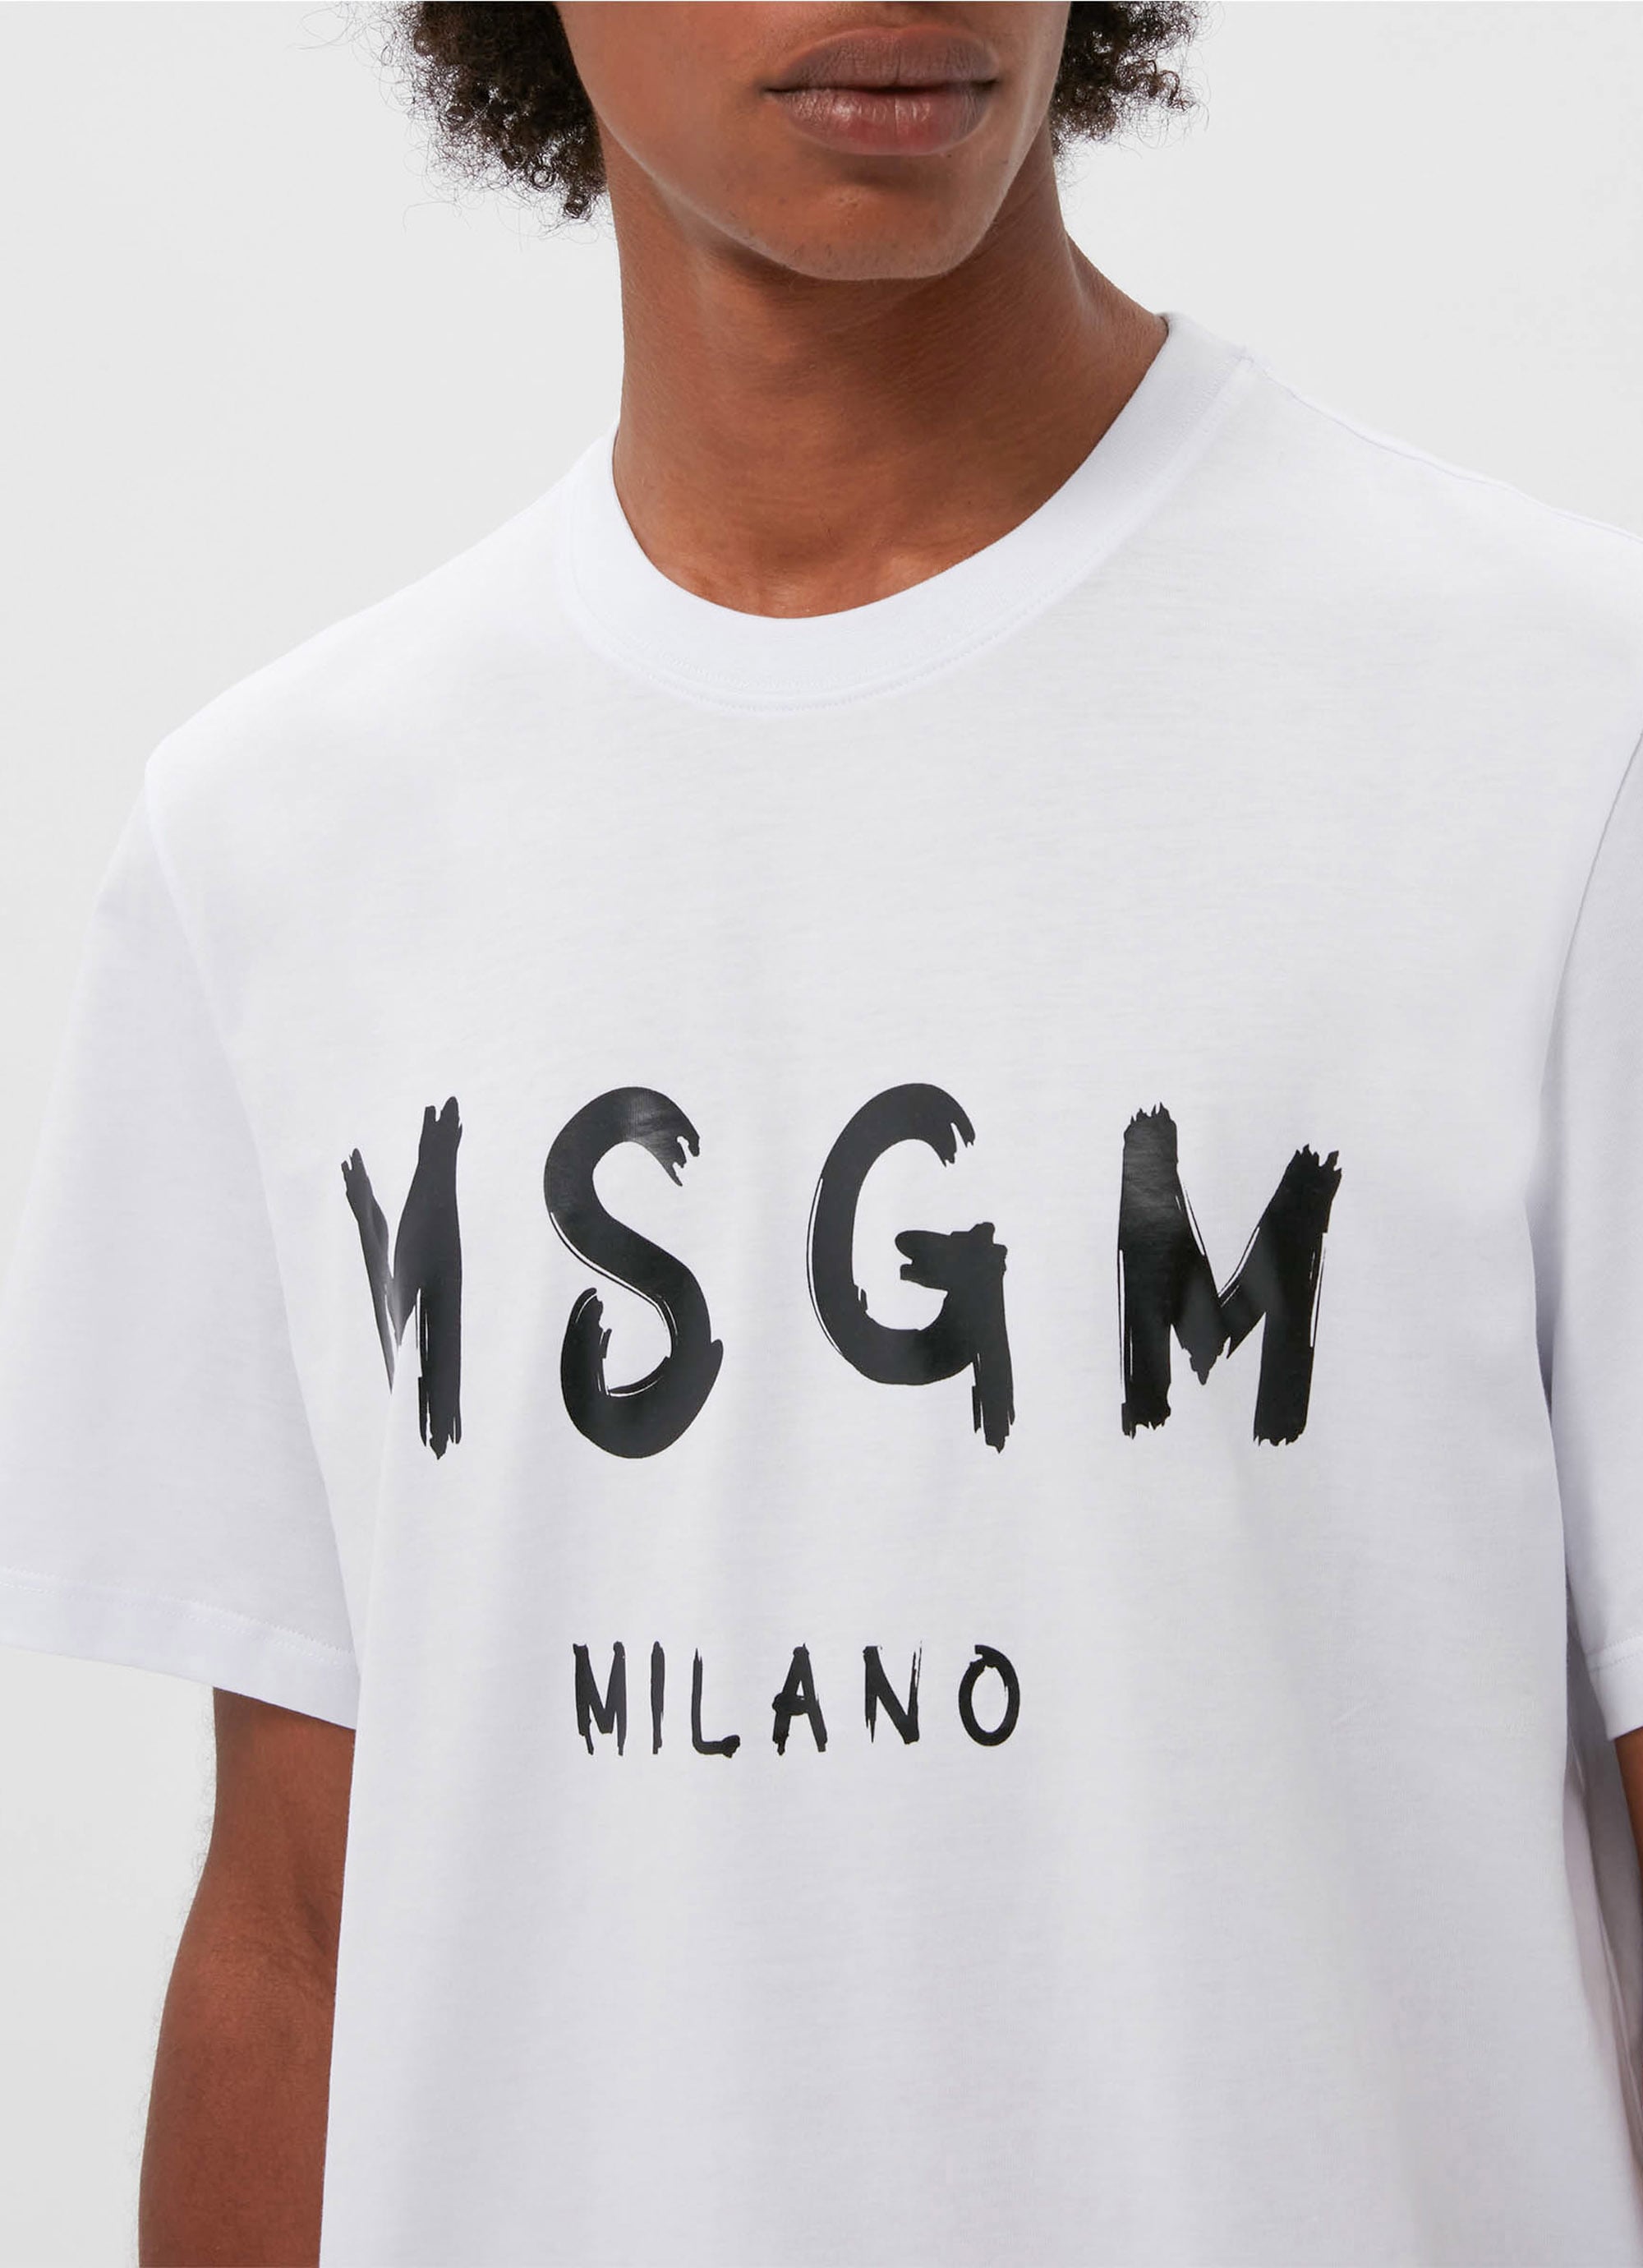 新着‼︎  新品‼︎ MGSM Tシャツ